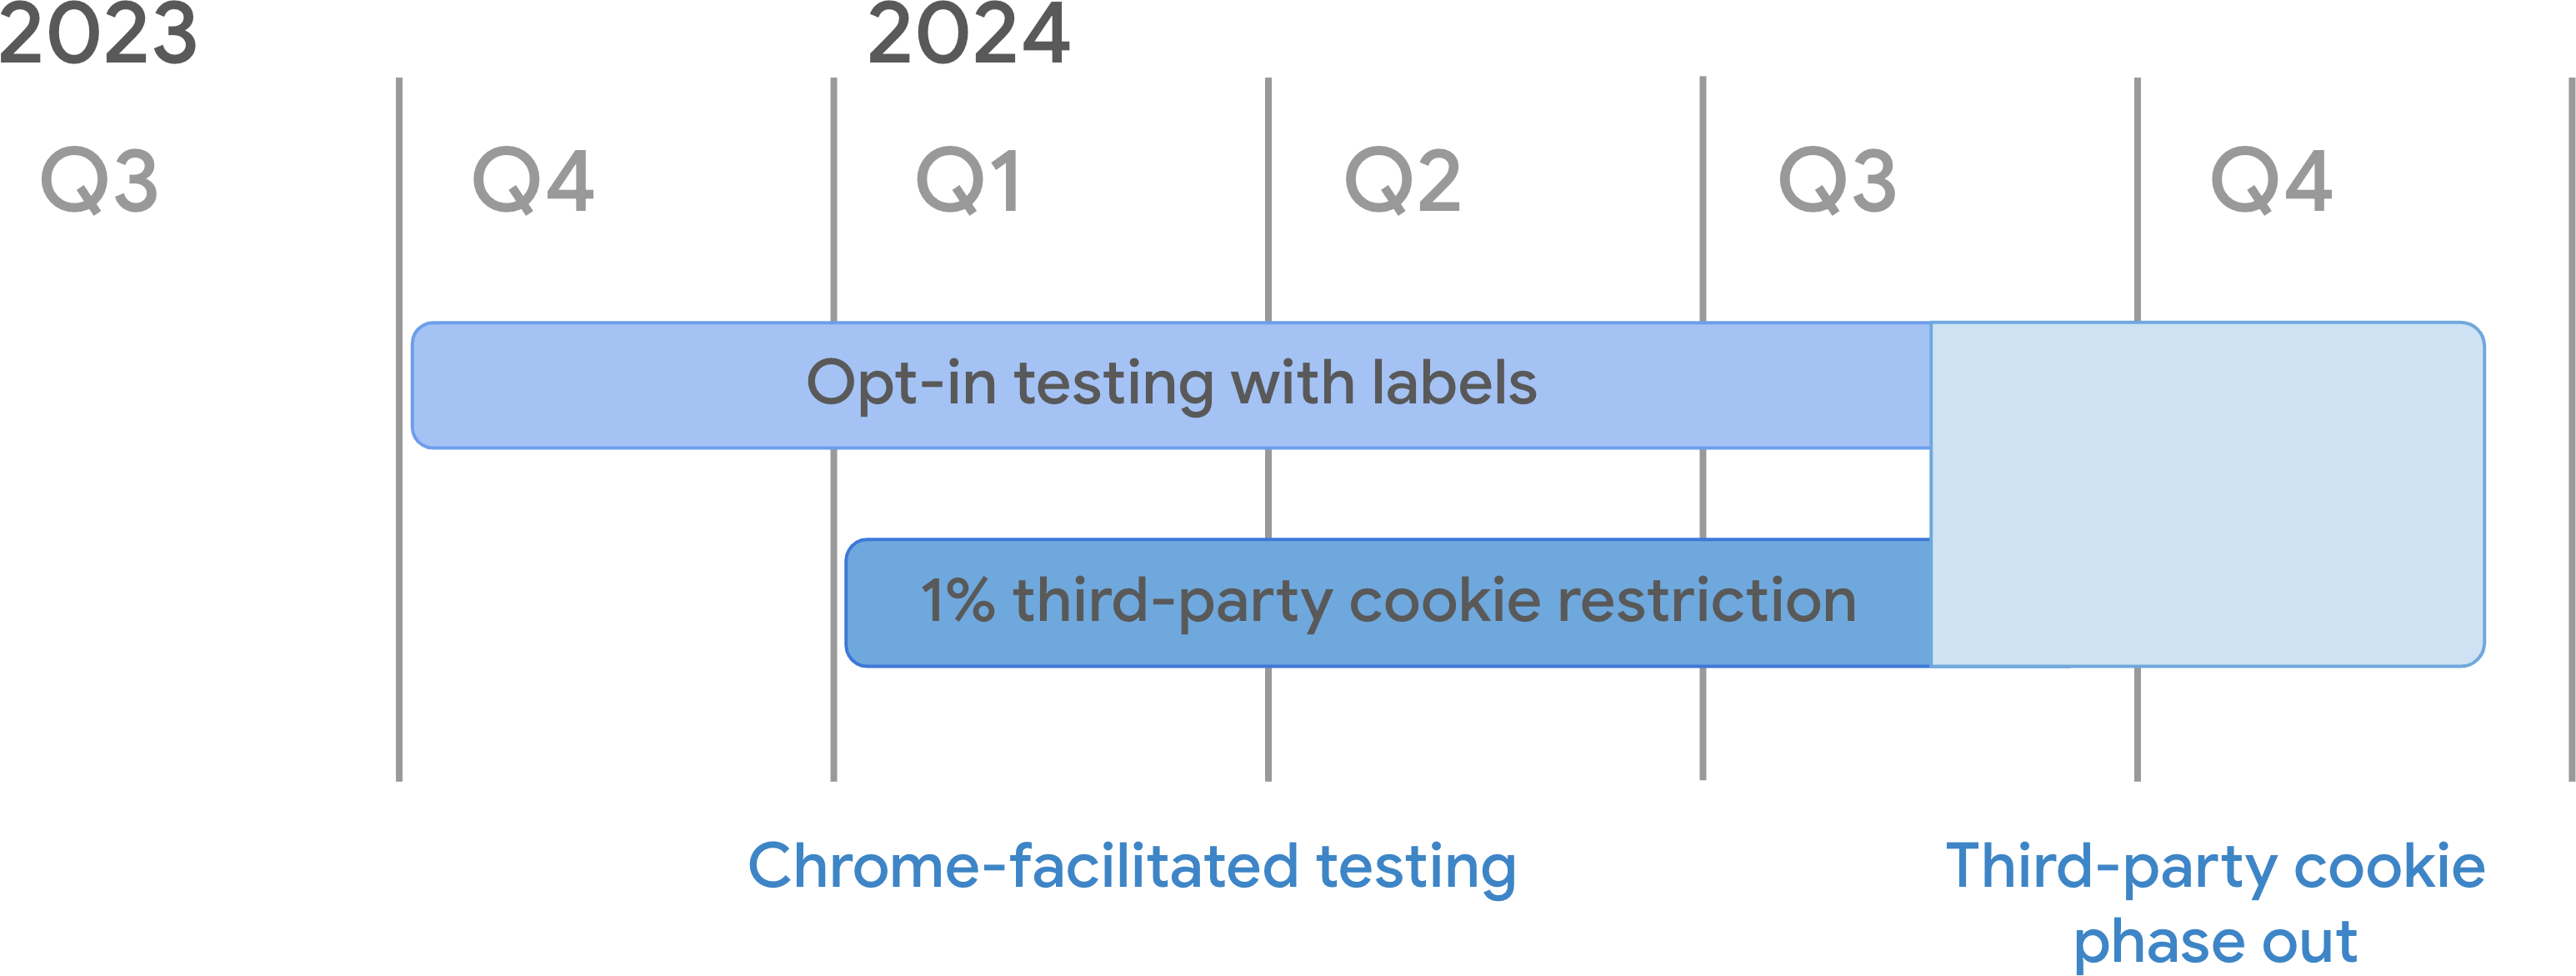 서드 파티 쿠키 지원 중단 타임라인 Chrome에서 진행하는 테스트의 일환으로 라벨 모드를 사용한 수신 동의 테스트는 2023년 4분기에 시작되었으며, 2024년 1월 4일부터 1% 서드 파티 지원 중단 모드가 시작되었습니다. 서드 파티 쿠키의 단계적 폐지가 시작되는 2024년 3분기 중반까지 계속됩니다.